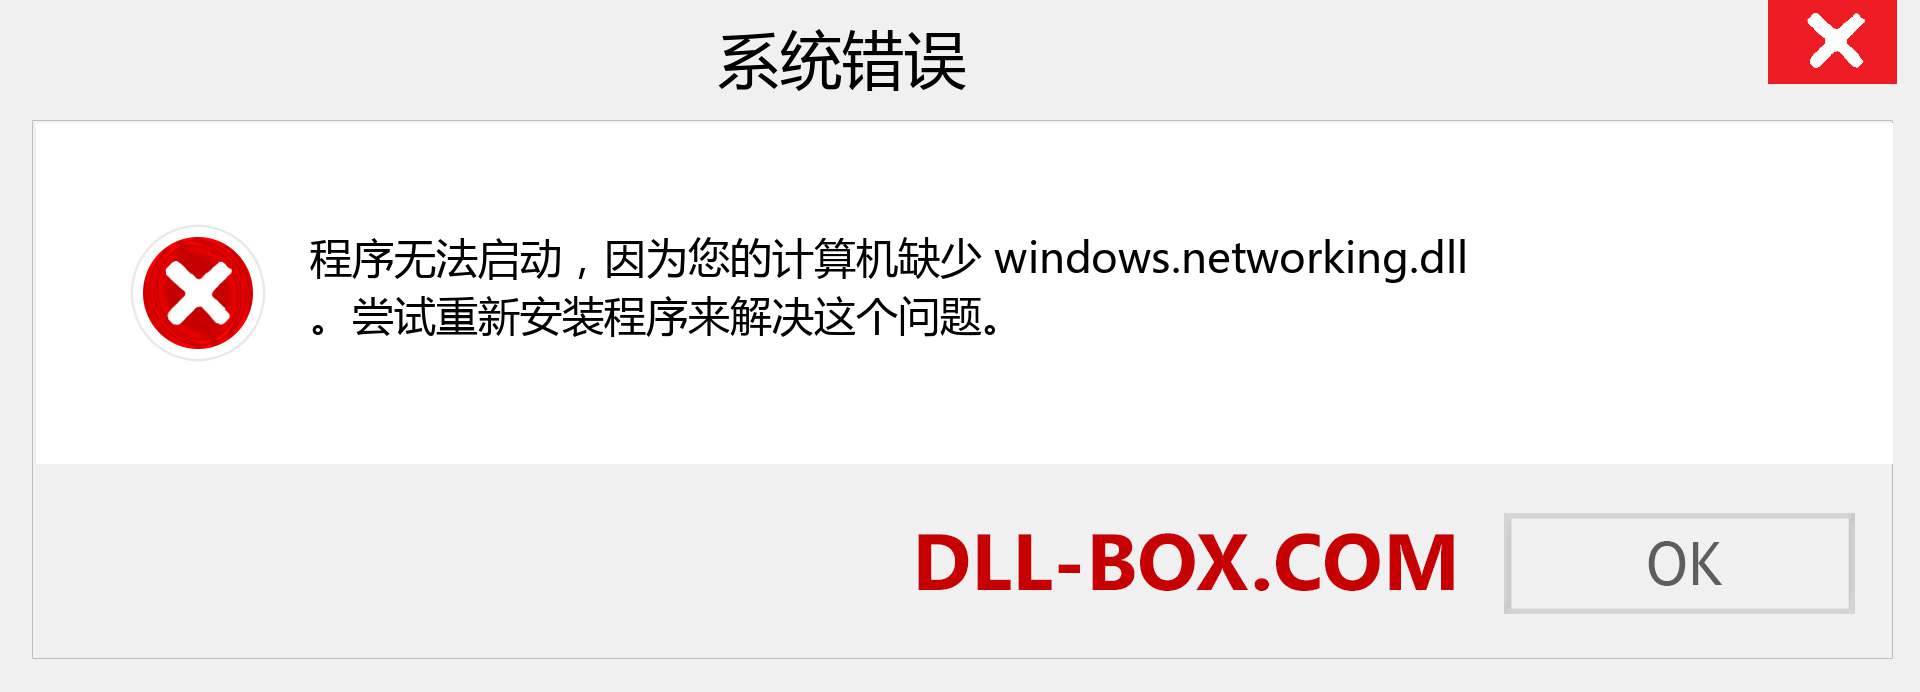 windows.networking.dll 文件丢失？。 适用于 Windows 7、8、10 的下载 - 修复 Windows、照片、图像上的 windows.networking dll 丢失错误